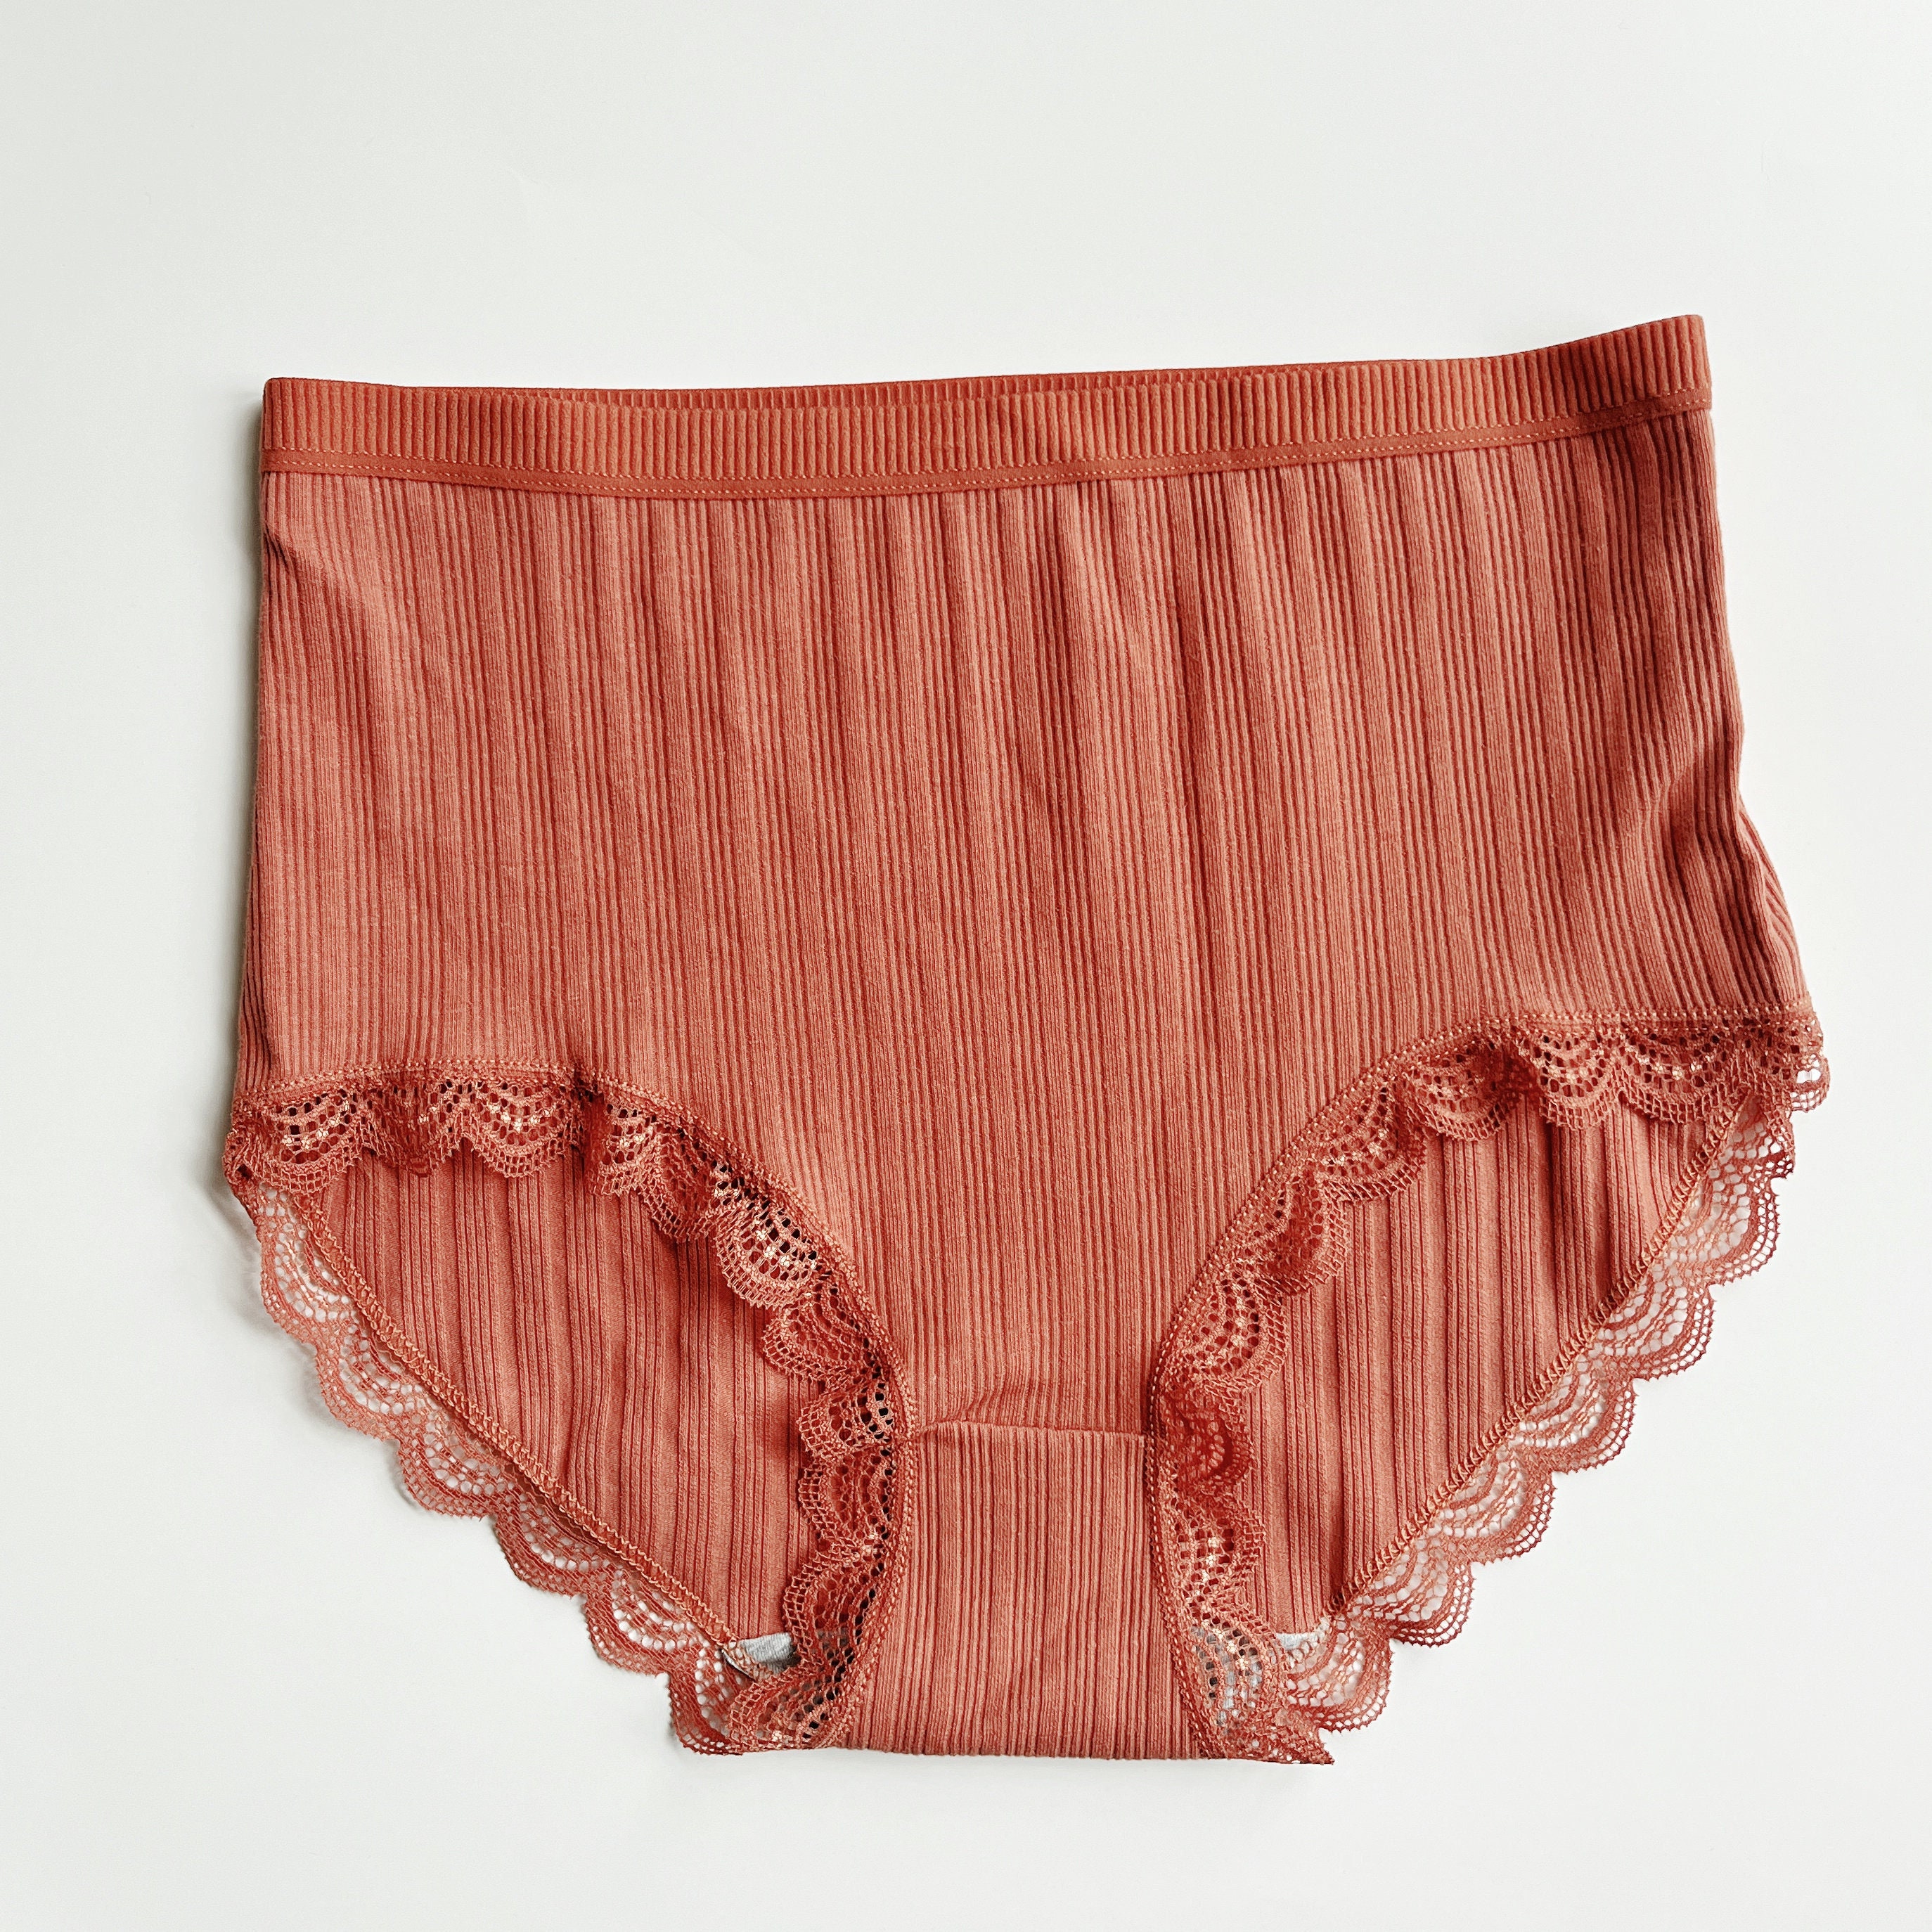 Eashery Sext Panty for Women Women's High Waist Cotton Underwear